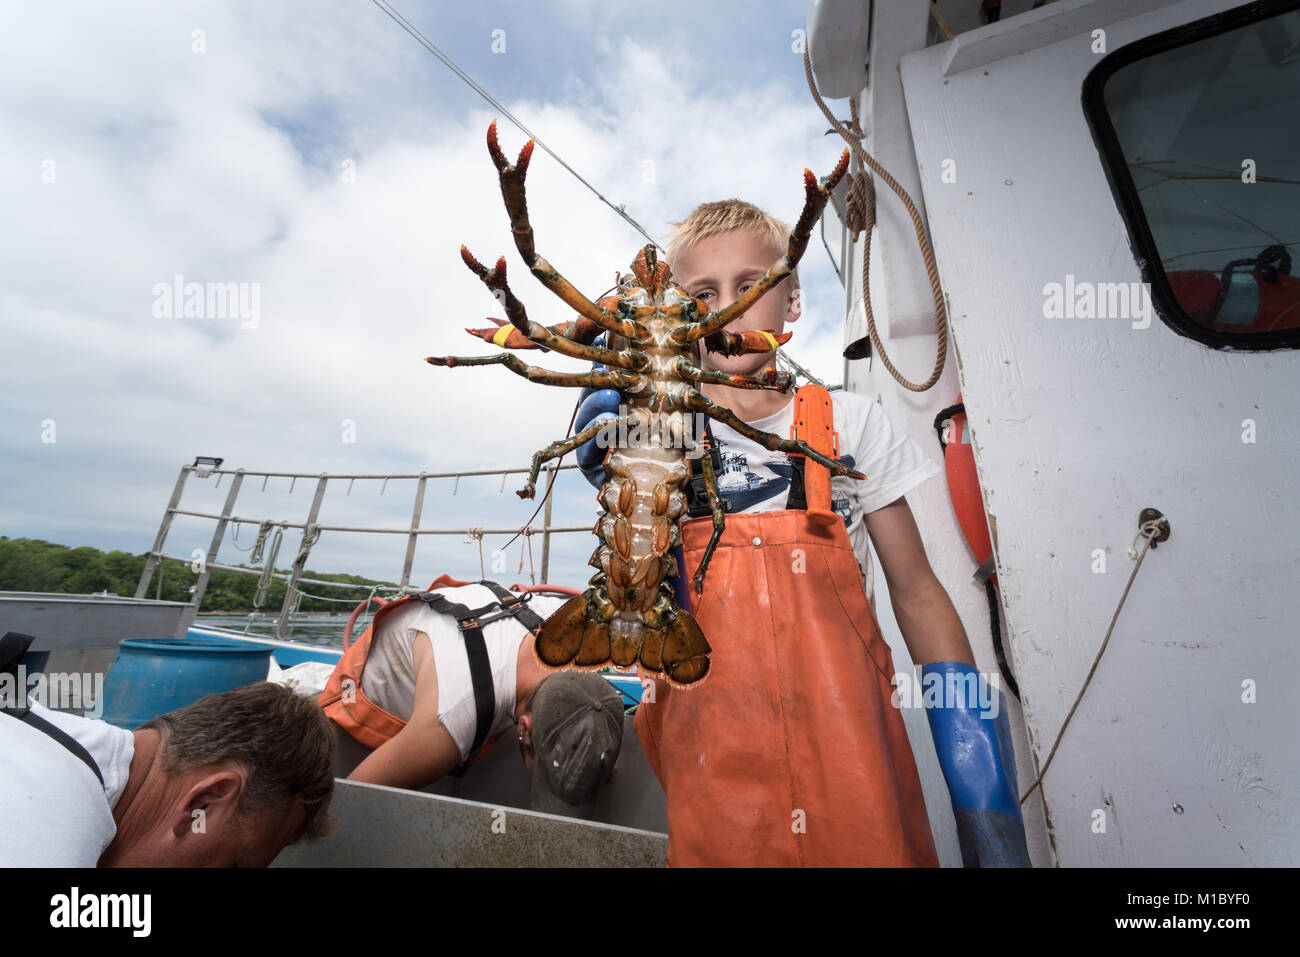 Fils de 9 ans de capitaine de bateau de pêche du homard Le homard est grand c'est la repousse ses griffes. Chebeague Island, Casco Bay, Maine Banque D'Images